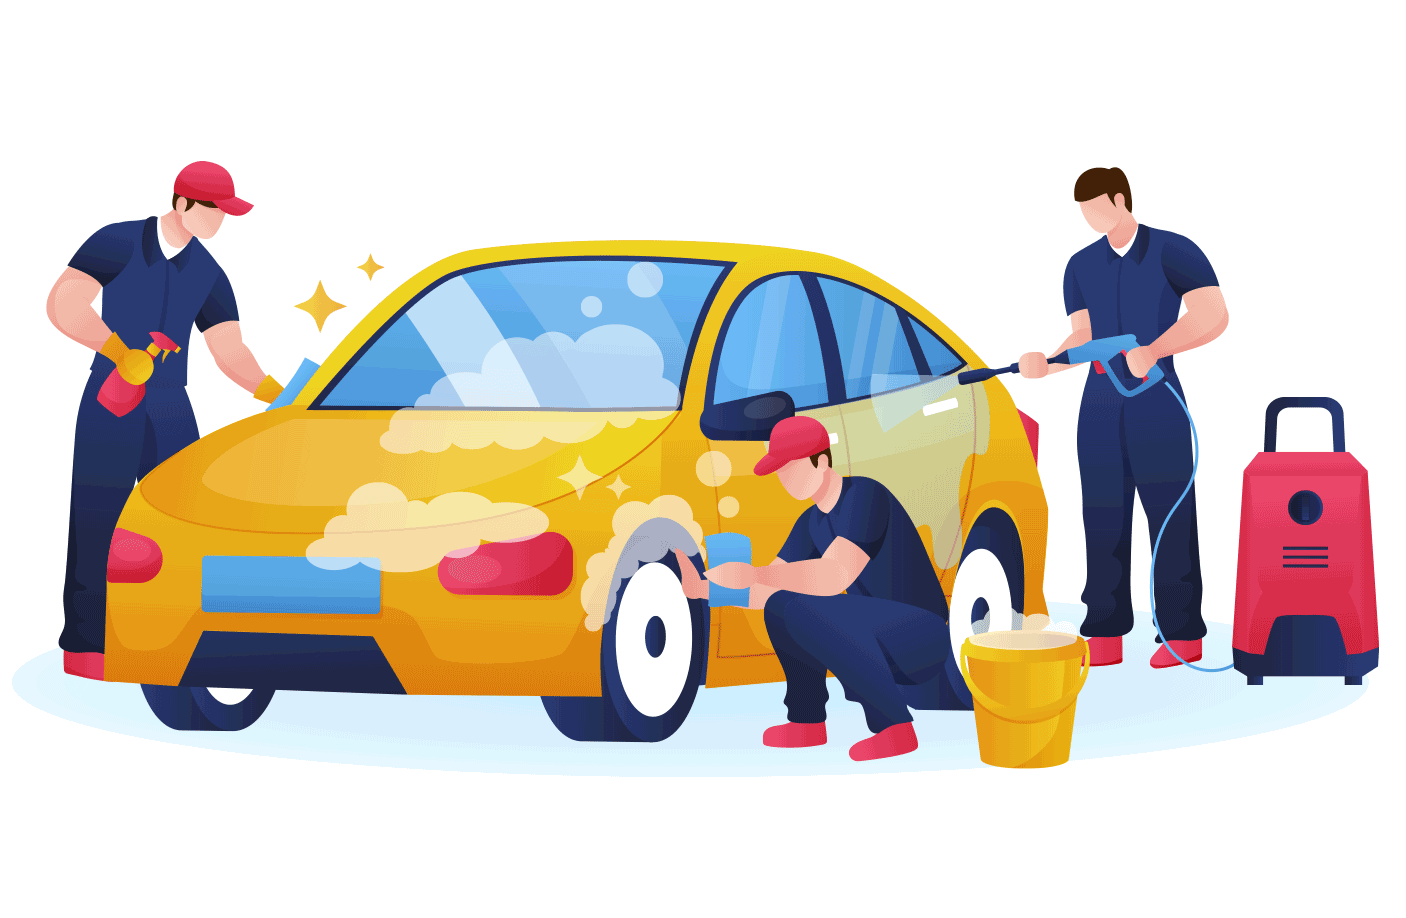 About Rainbow Car wash Qatar